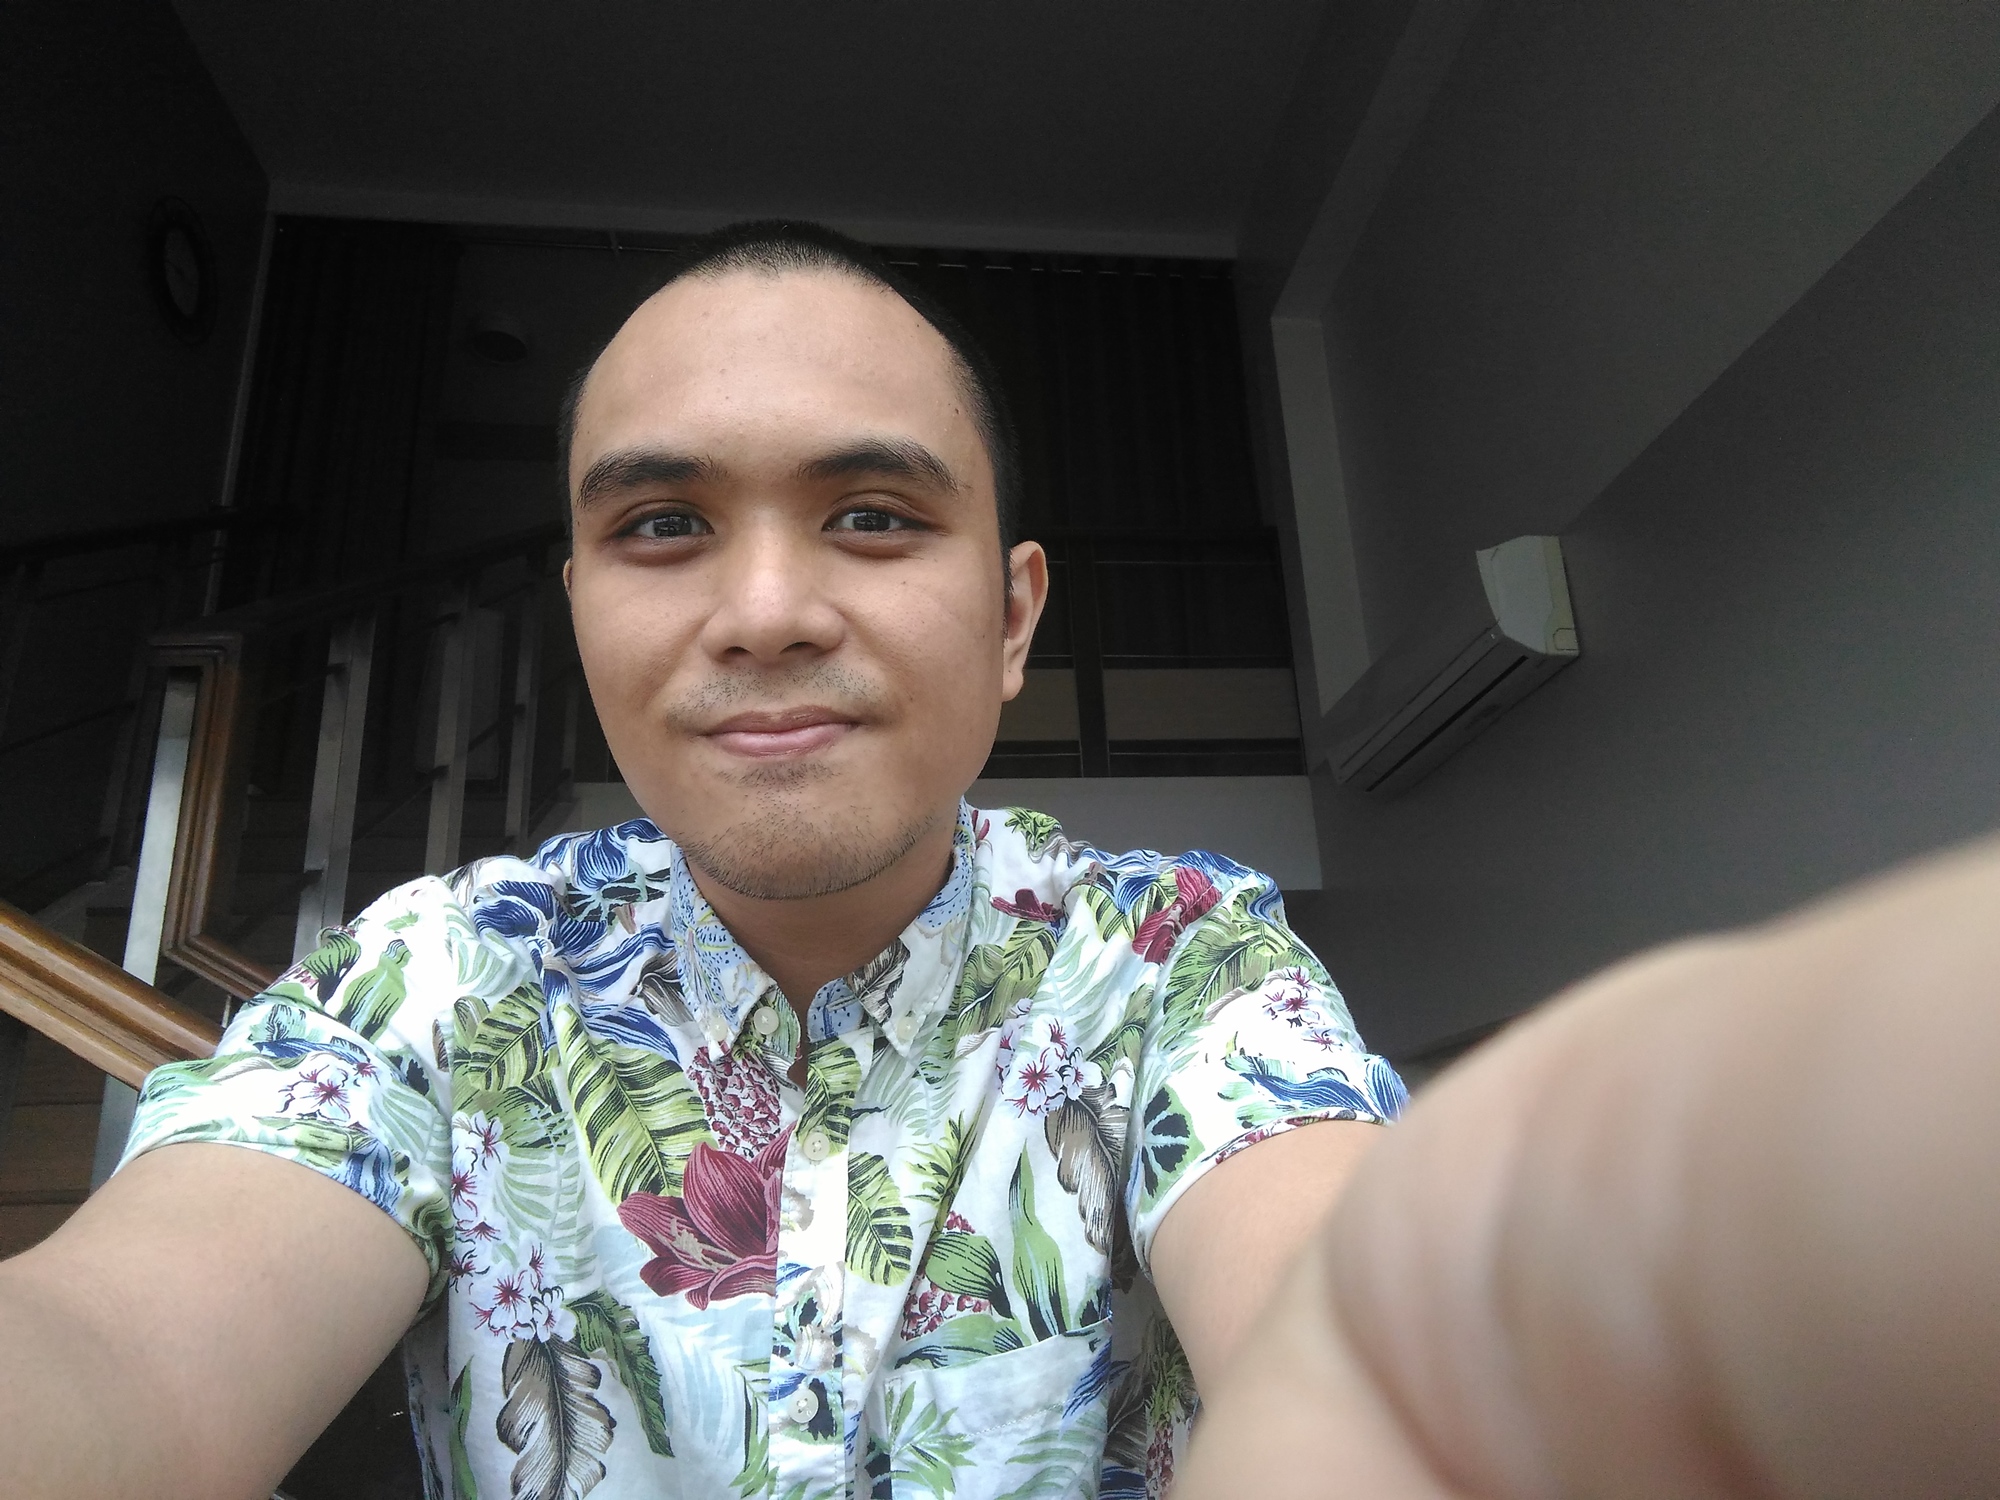 ASUS ZenFone Selfie front-camera photo